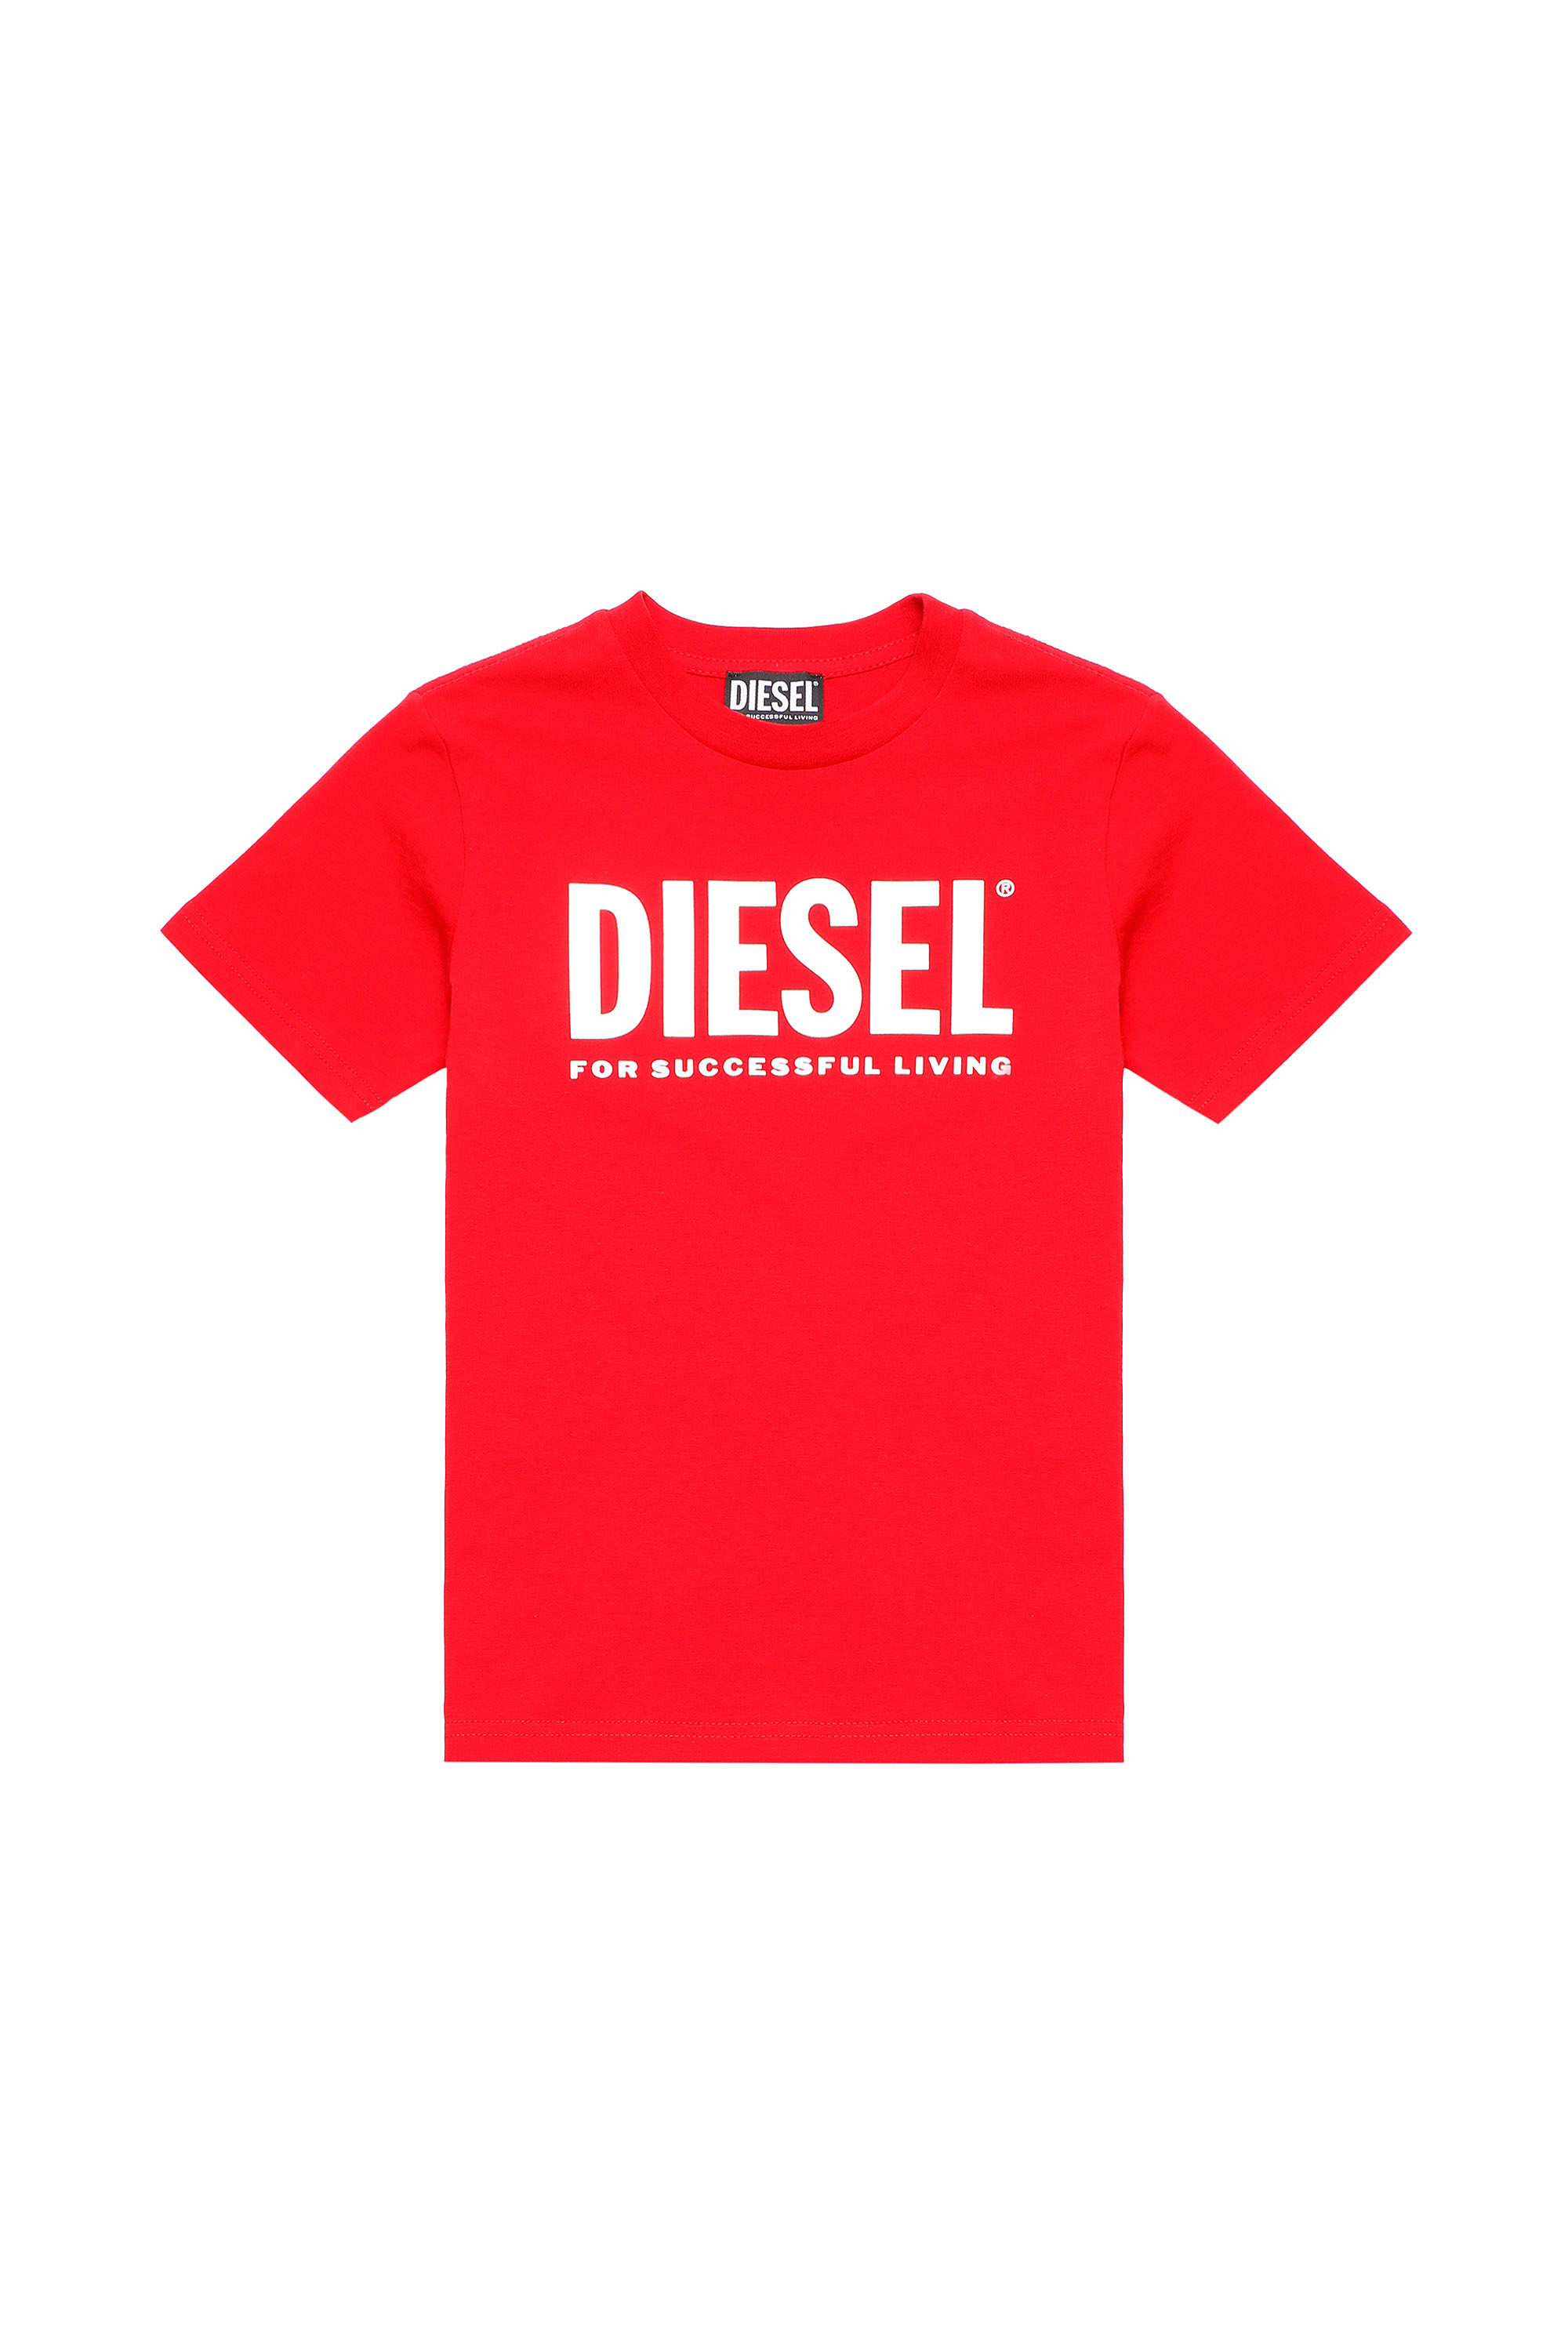 Diesel - TJUSTLOGO, Red - Image 1